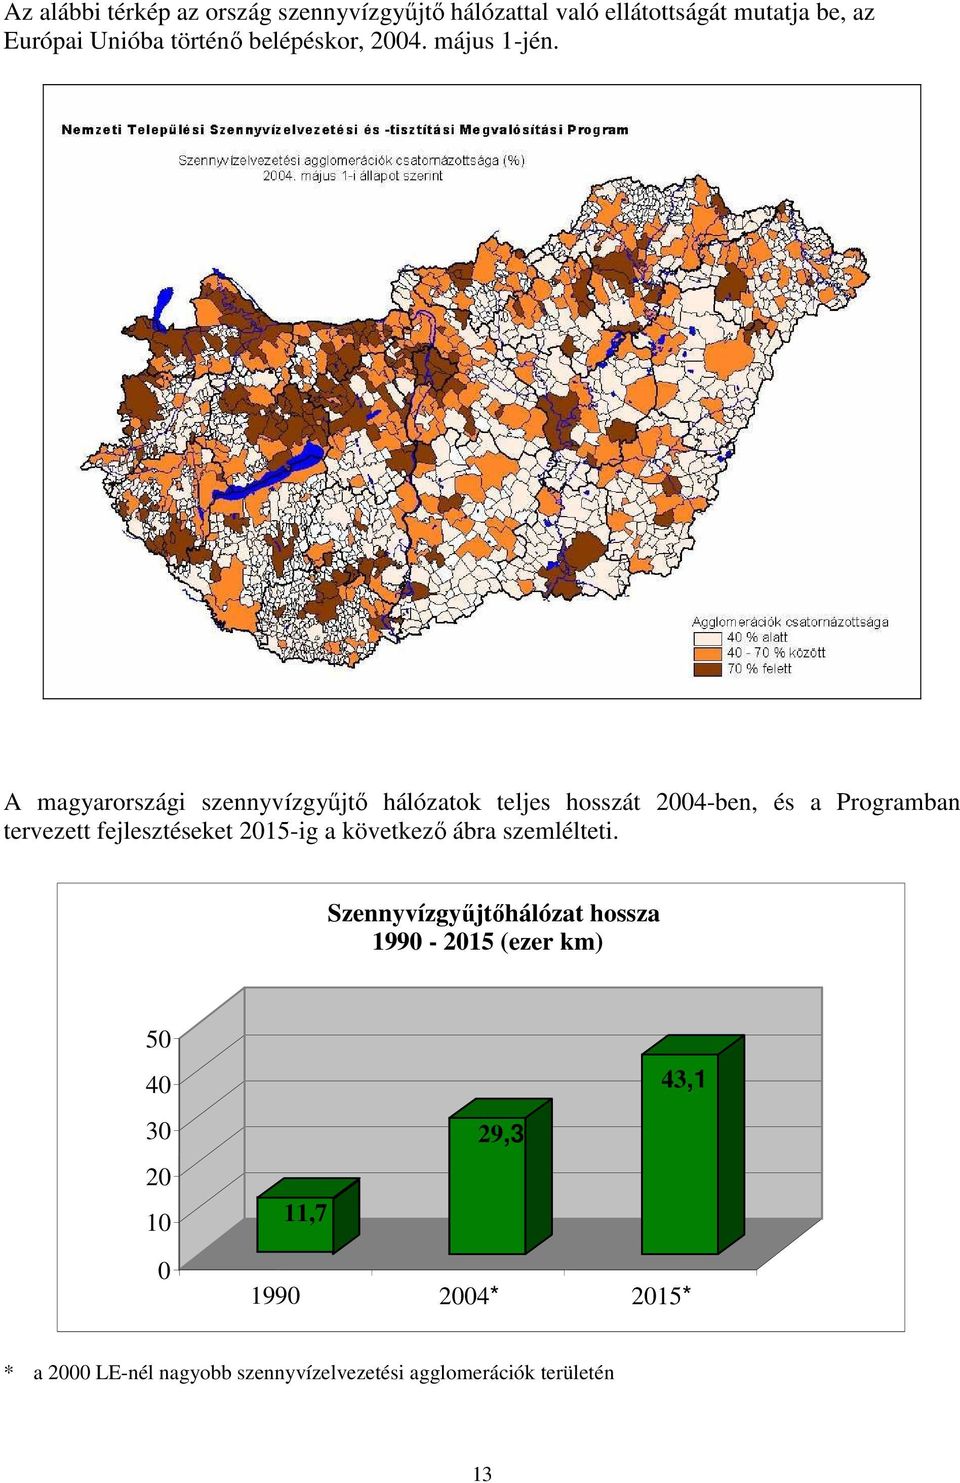 A magyarországi szennyvízgyőjtı hálózatok teljes hosszát 2004-ben, és a Programban tervezett fejlesztéseket